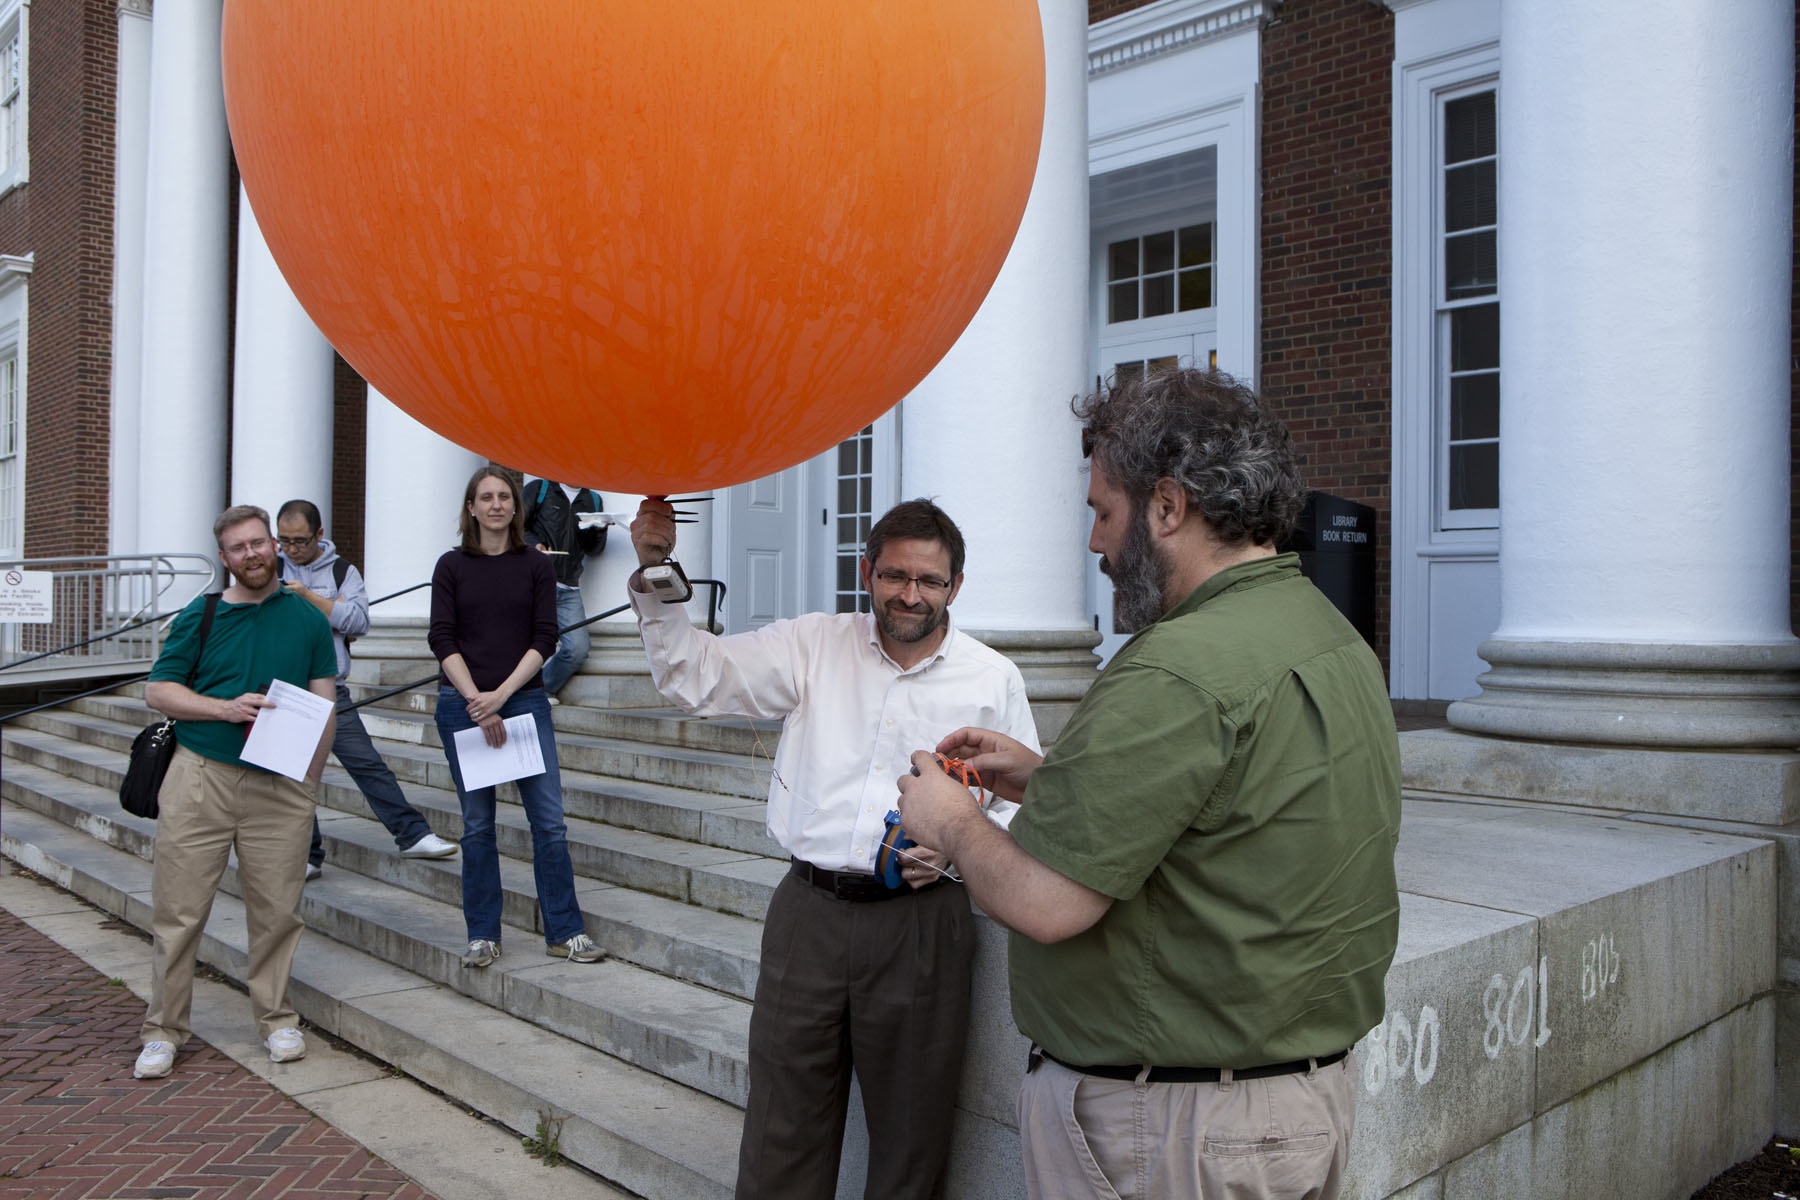 Man holding a giant orange balloon